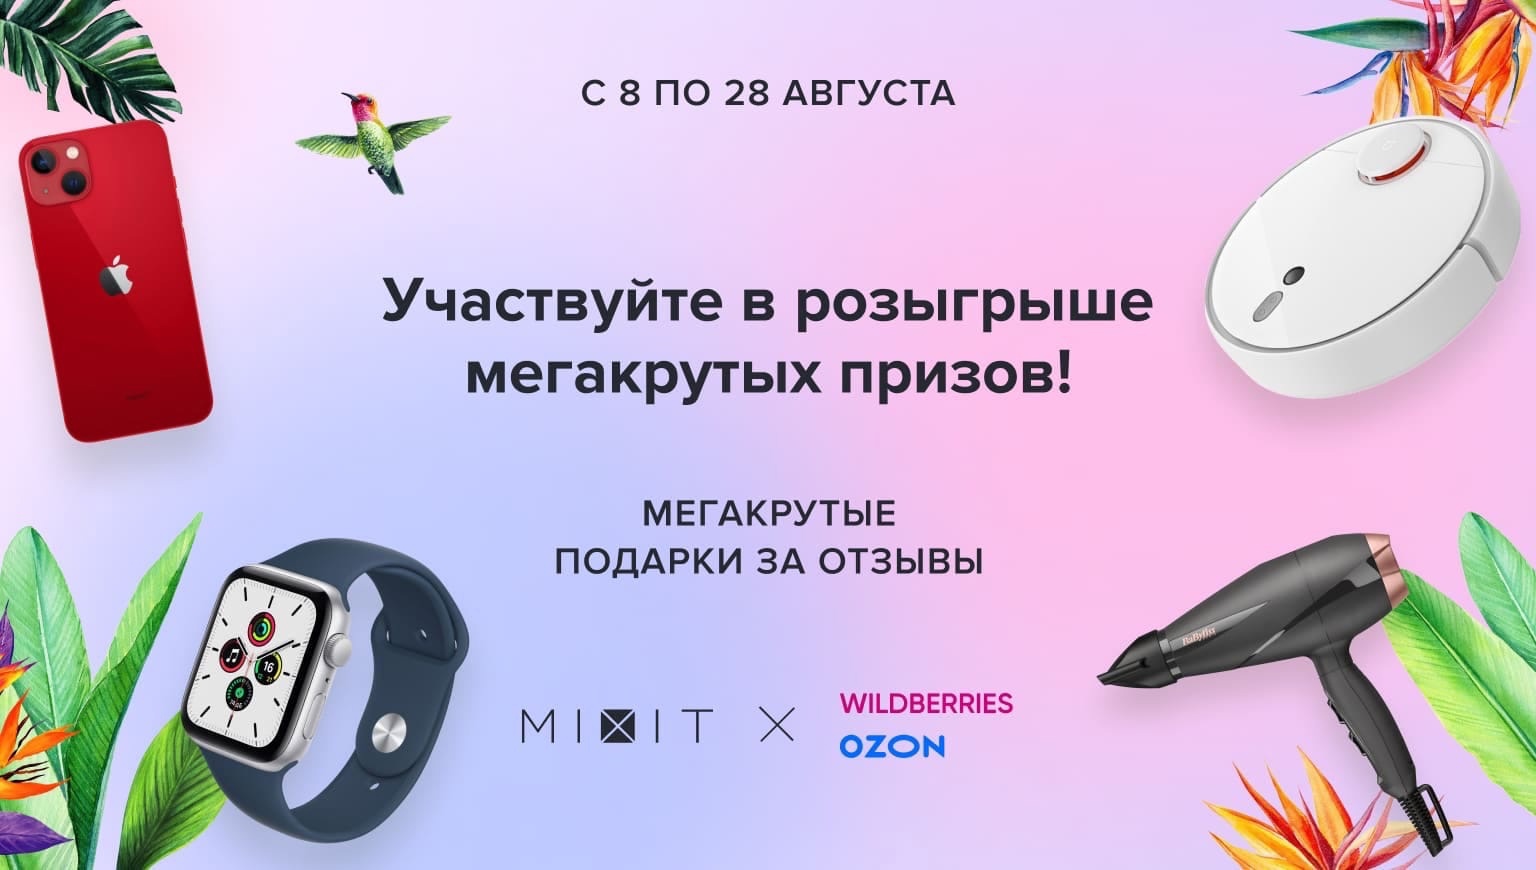 Промо-акция Mixit и Wildberries, Ozon.ru: «Подарки за отзывы на маркетплейсах»